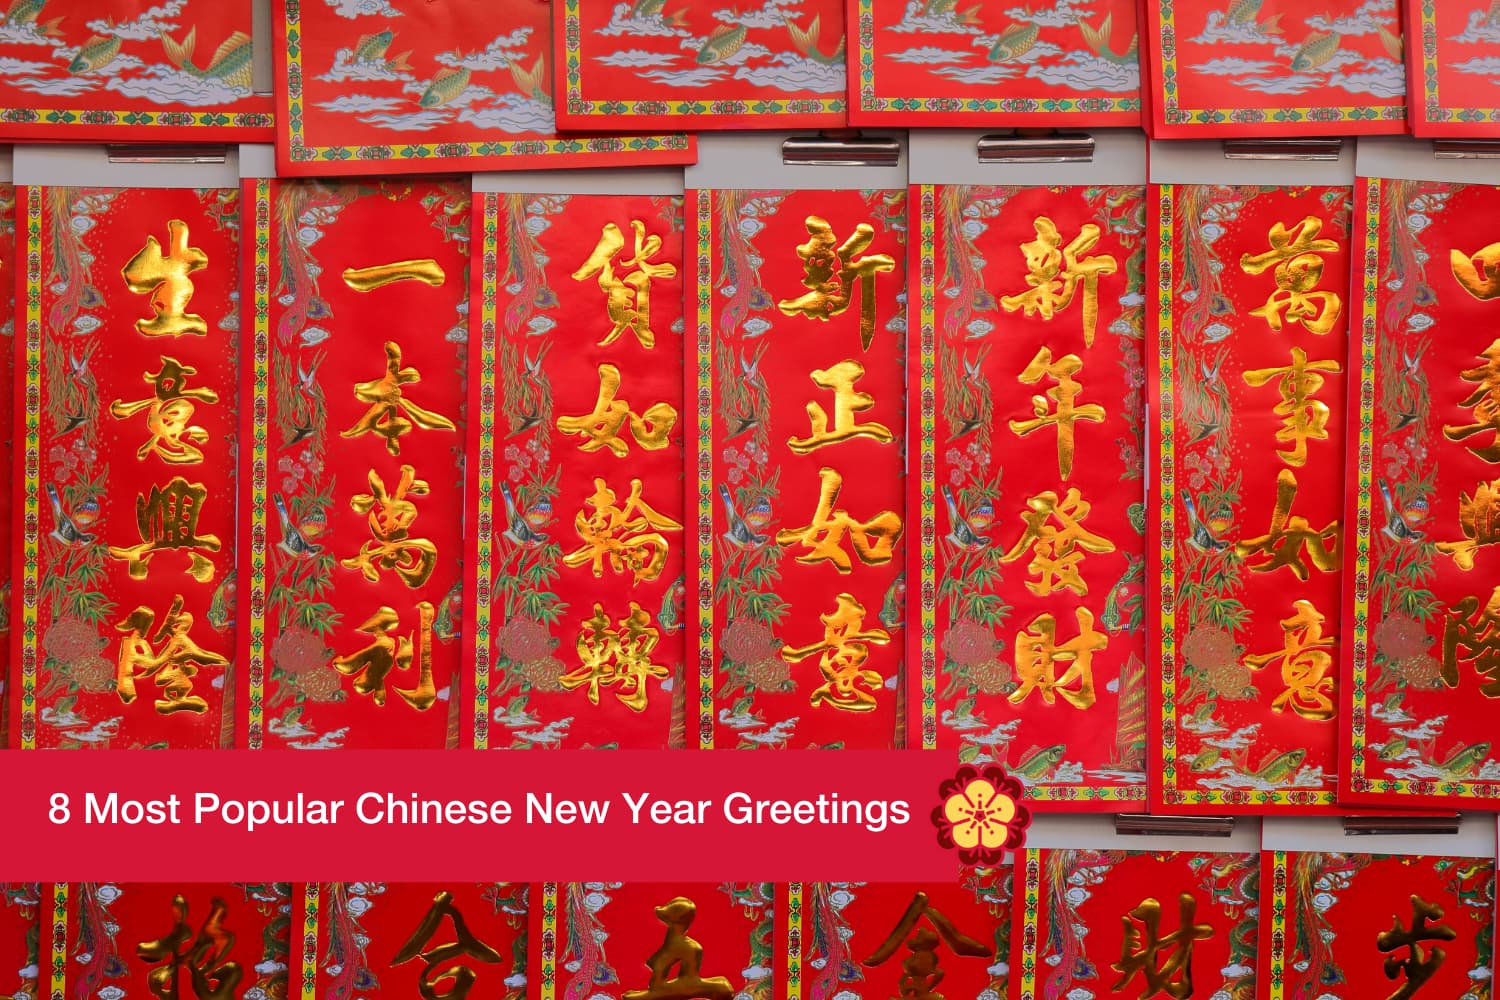 happy chinese new year in mandarin